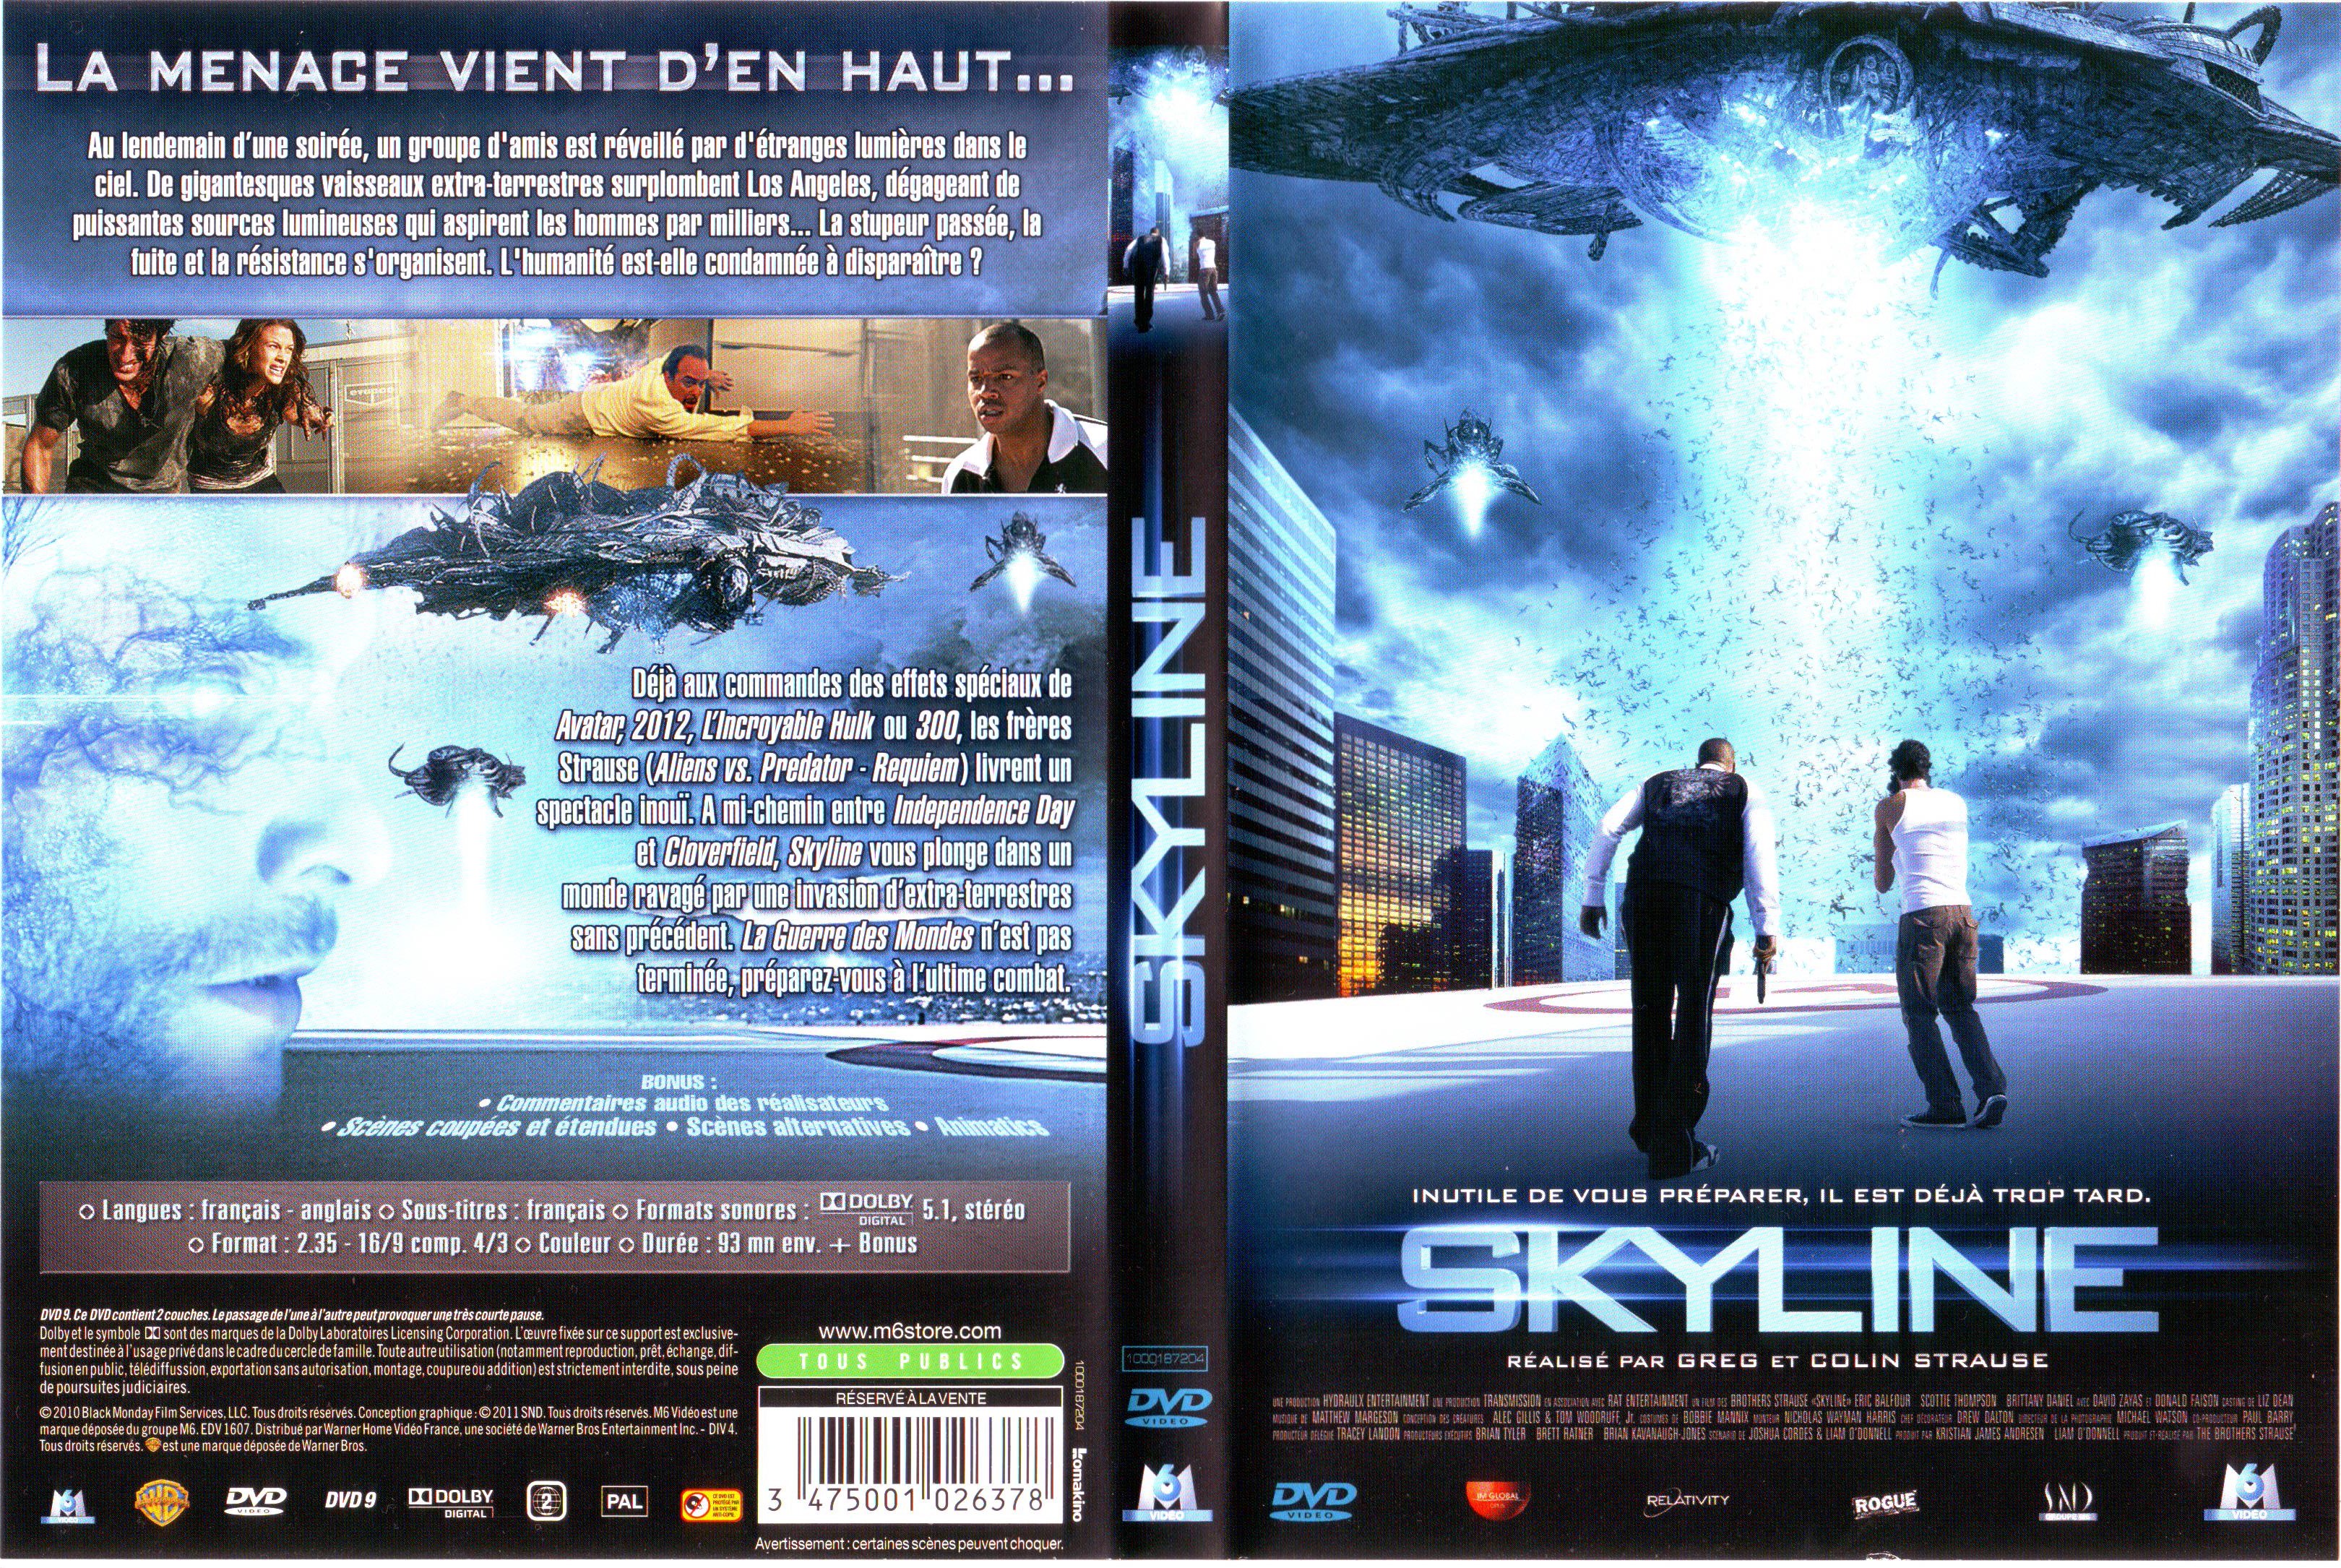 Jaquette DVD Skyline v2